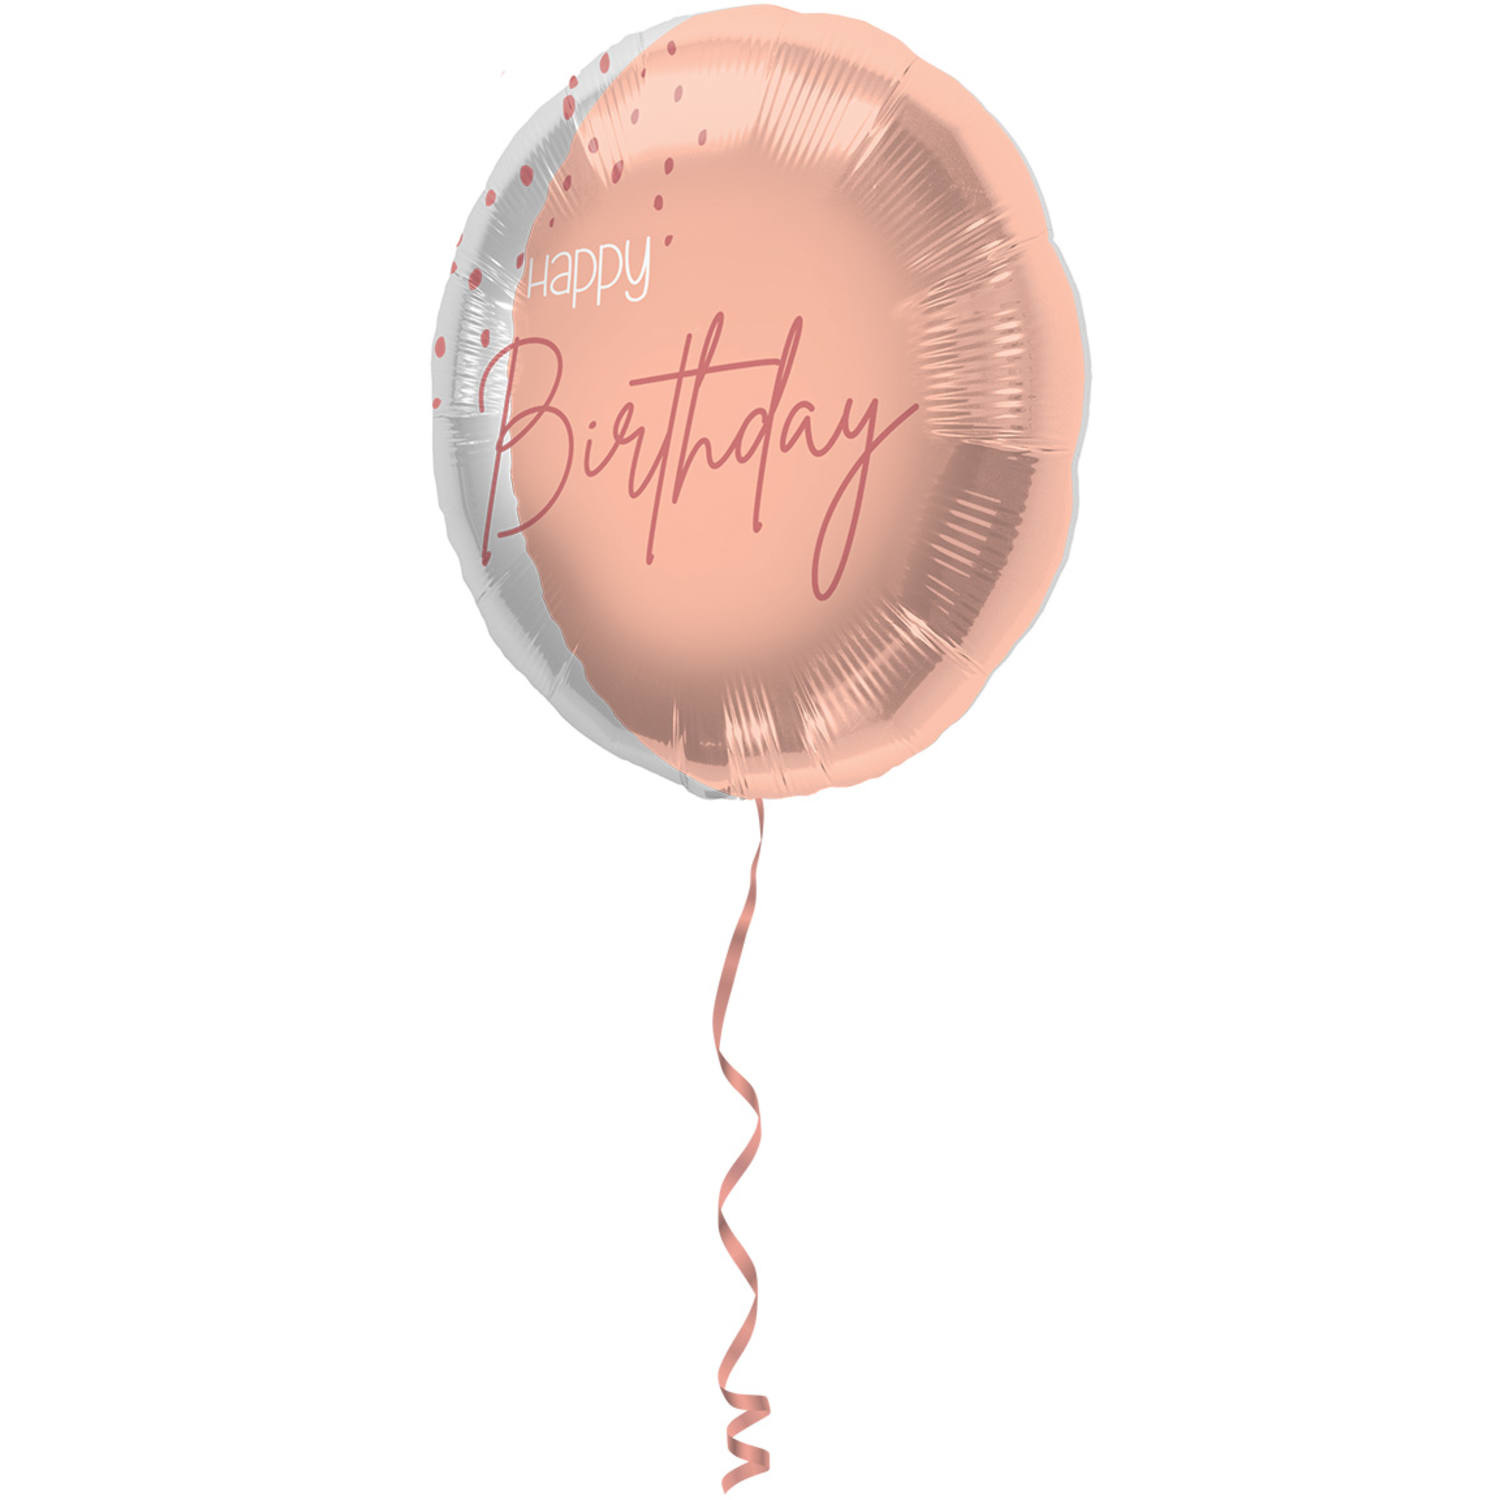 Folieballon 'happy Birthday' Lush Blush 45cm